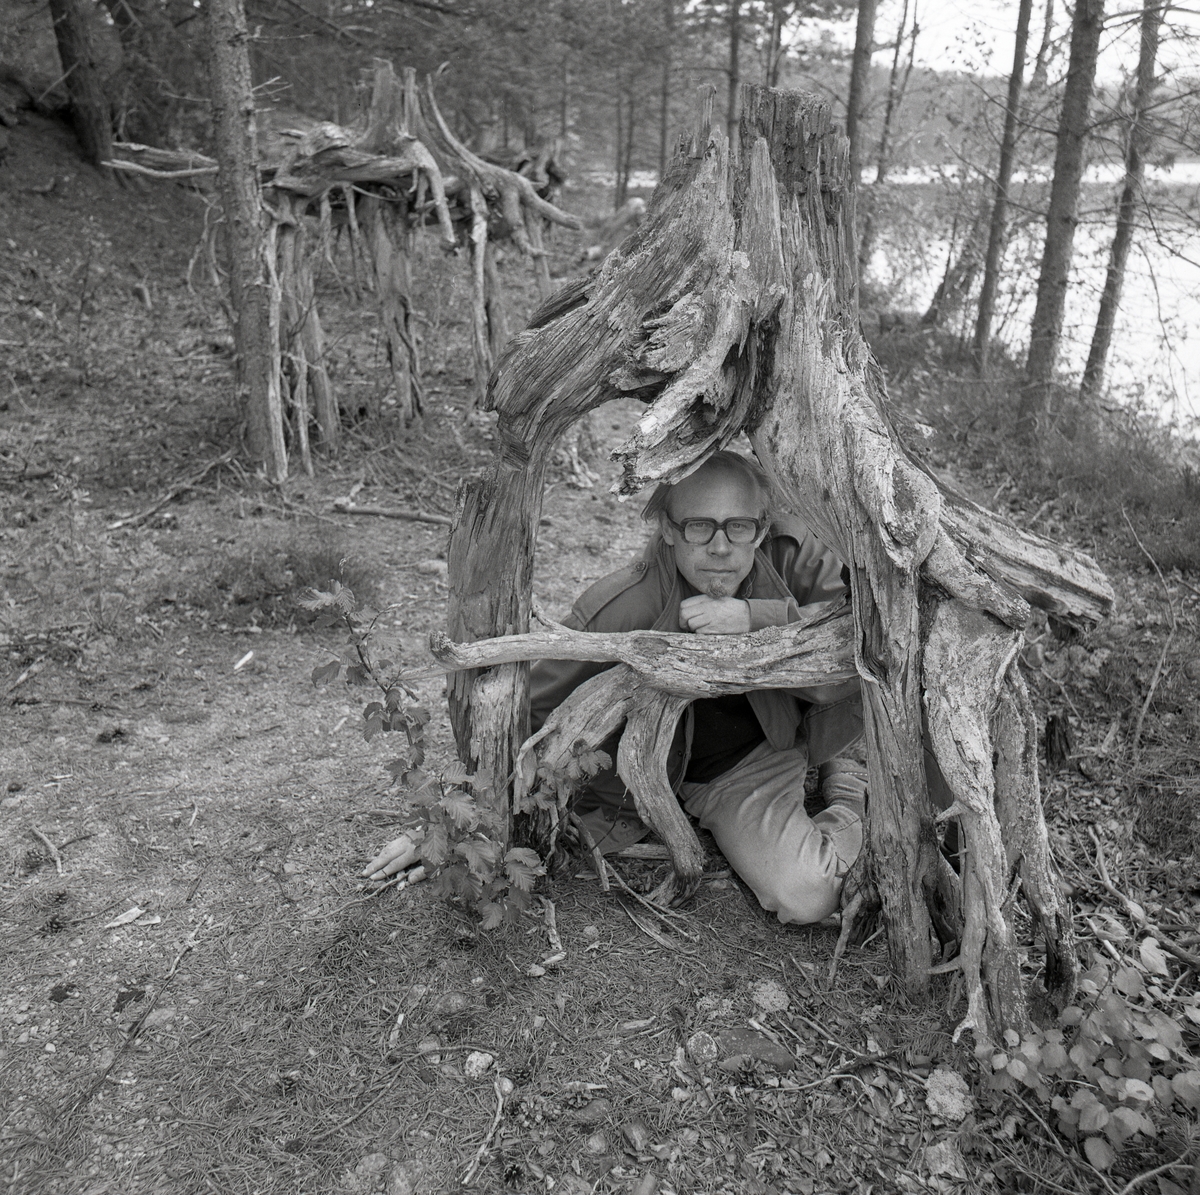 Mannen med glasögon sitter under stubben och trädrötterna. Det finns även jord, gräs, löv, kottar, träd, vatten och fler stubbar med trädrötter. Törn 1990